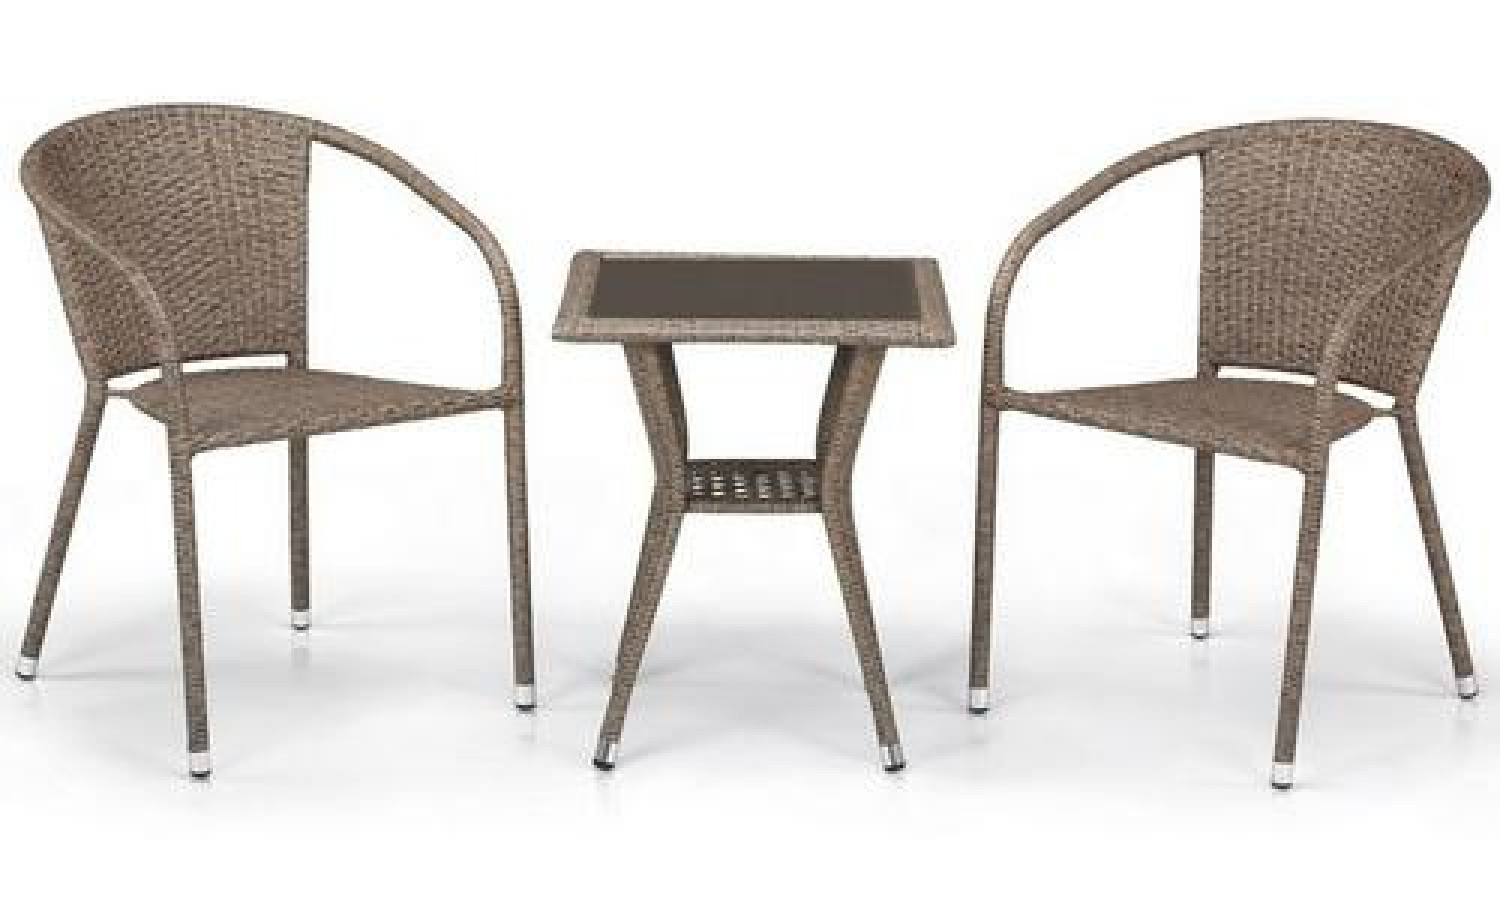 Комплект плетеной мебели T25B/Y137C-W56 Light Brown 2Pcs